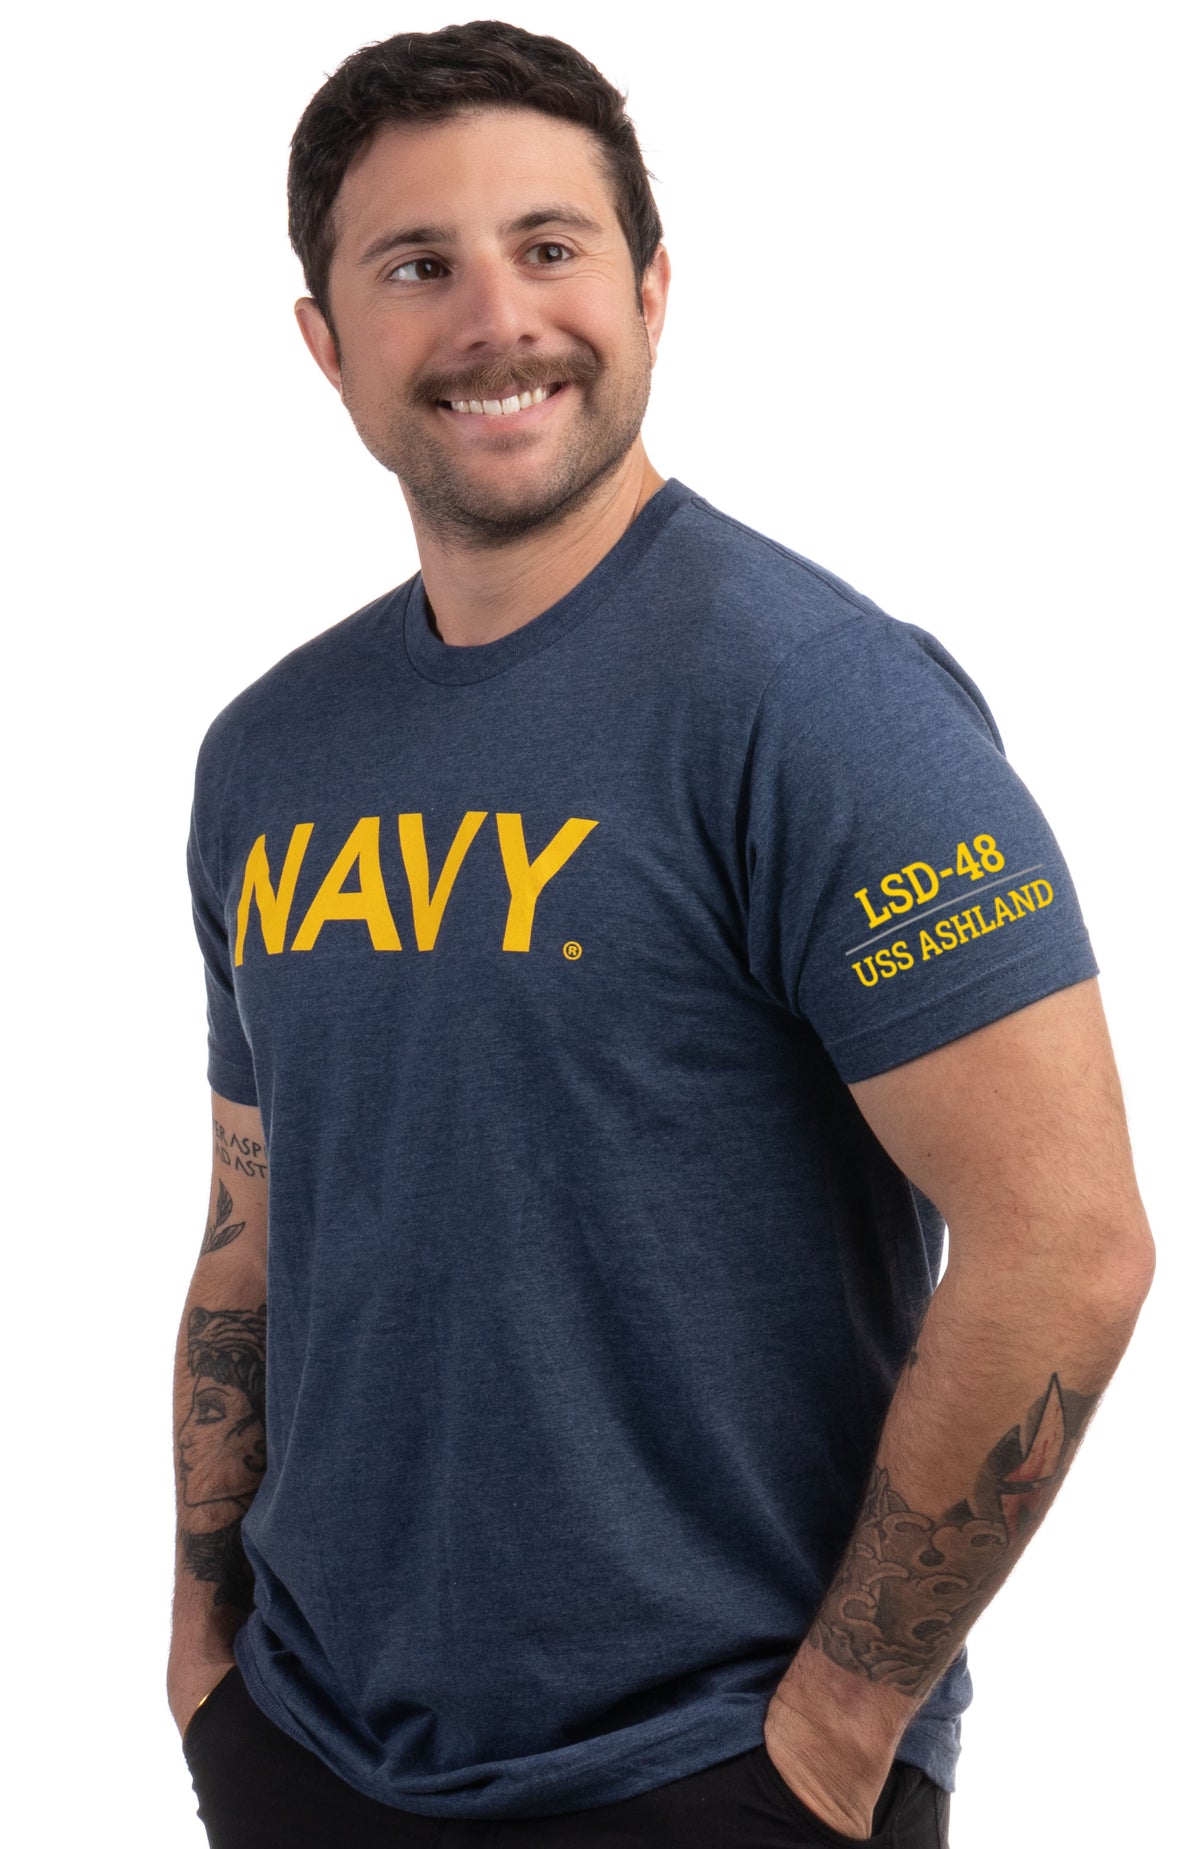 USS Ashland, LSD-48 | U.S. Navy Sailor Veteran USN United States Naval T-shirt for Men Women